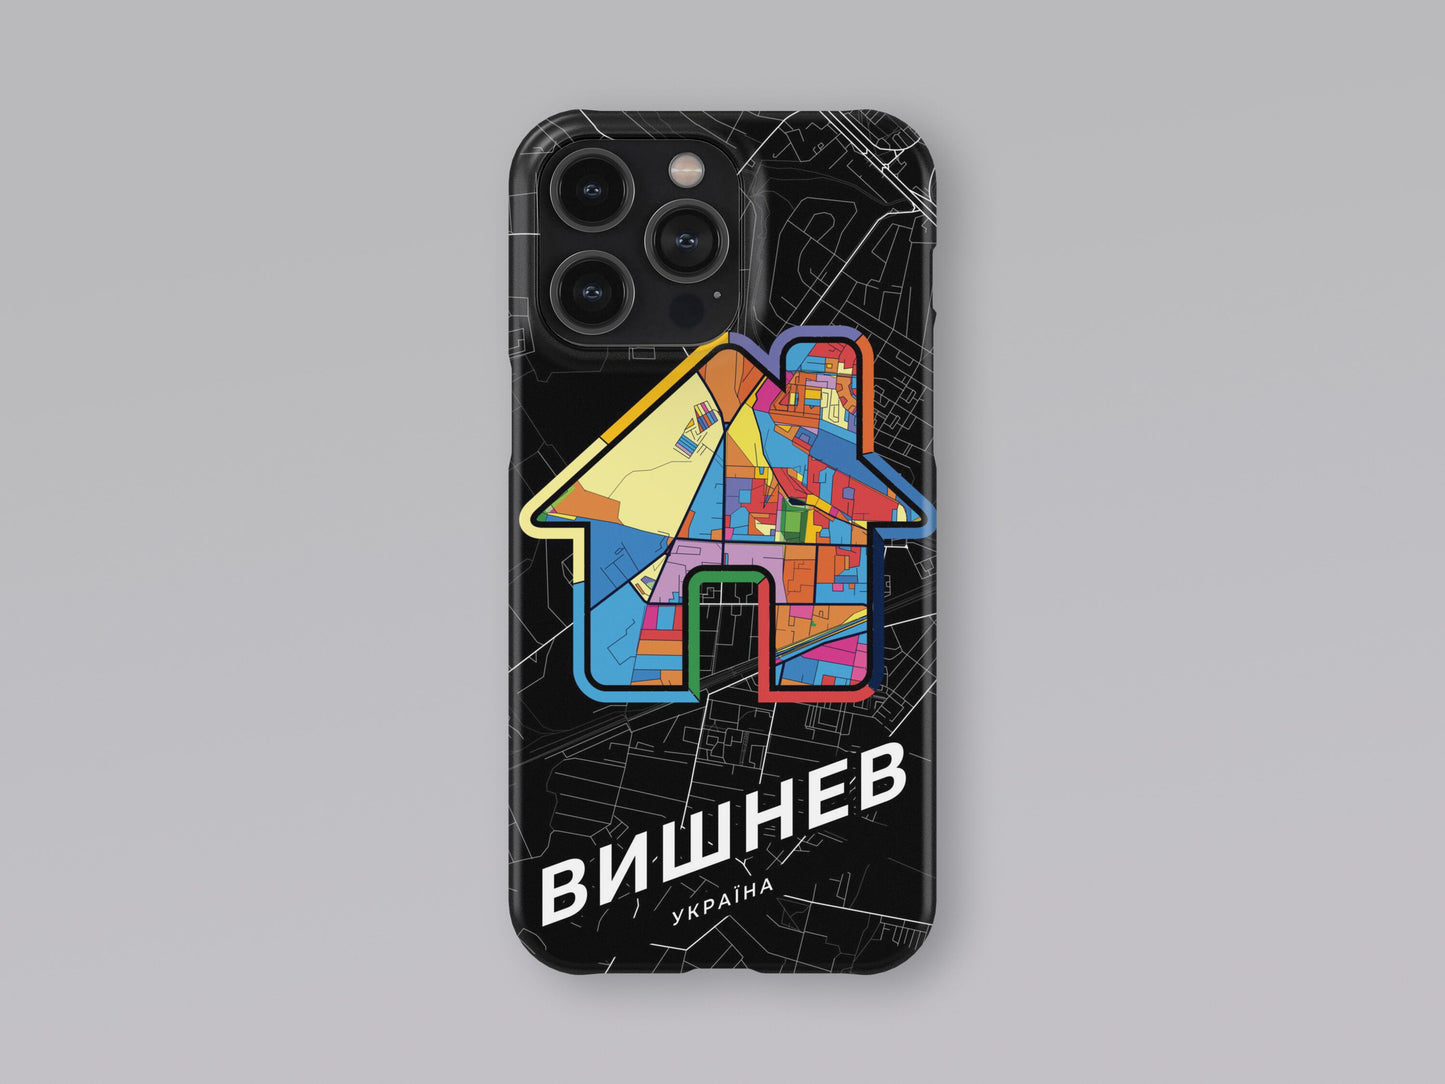 Vyshneve Ukraine slim phone case with colorful icon 3